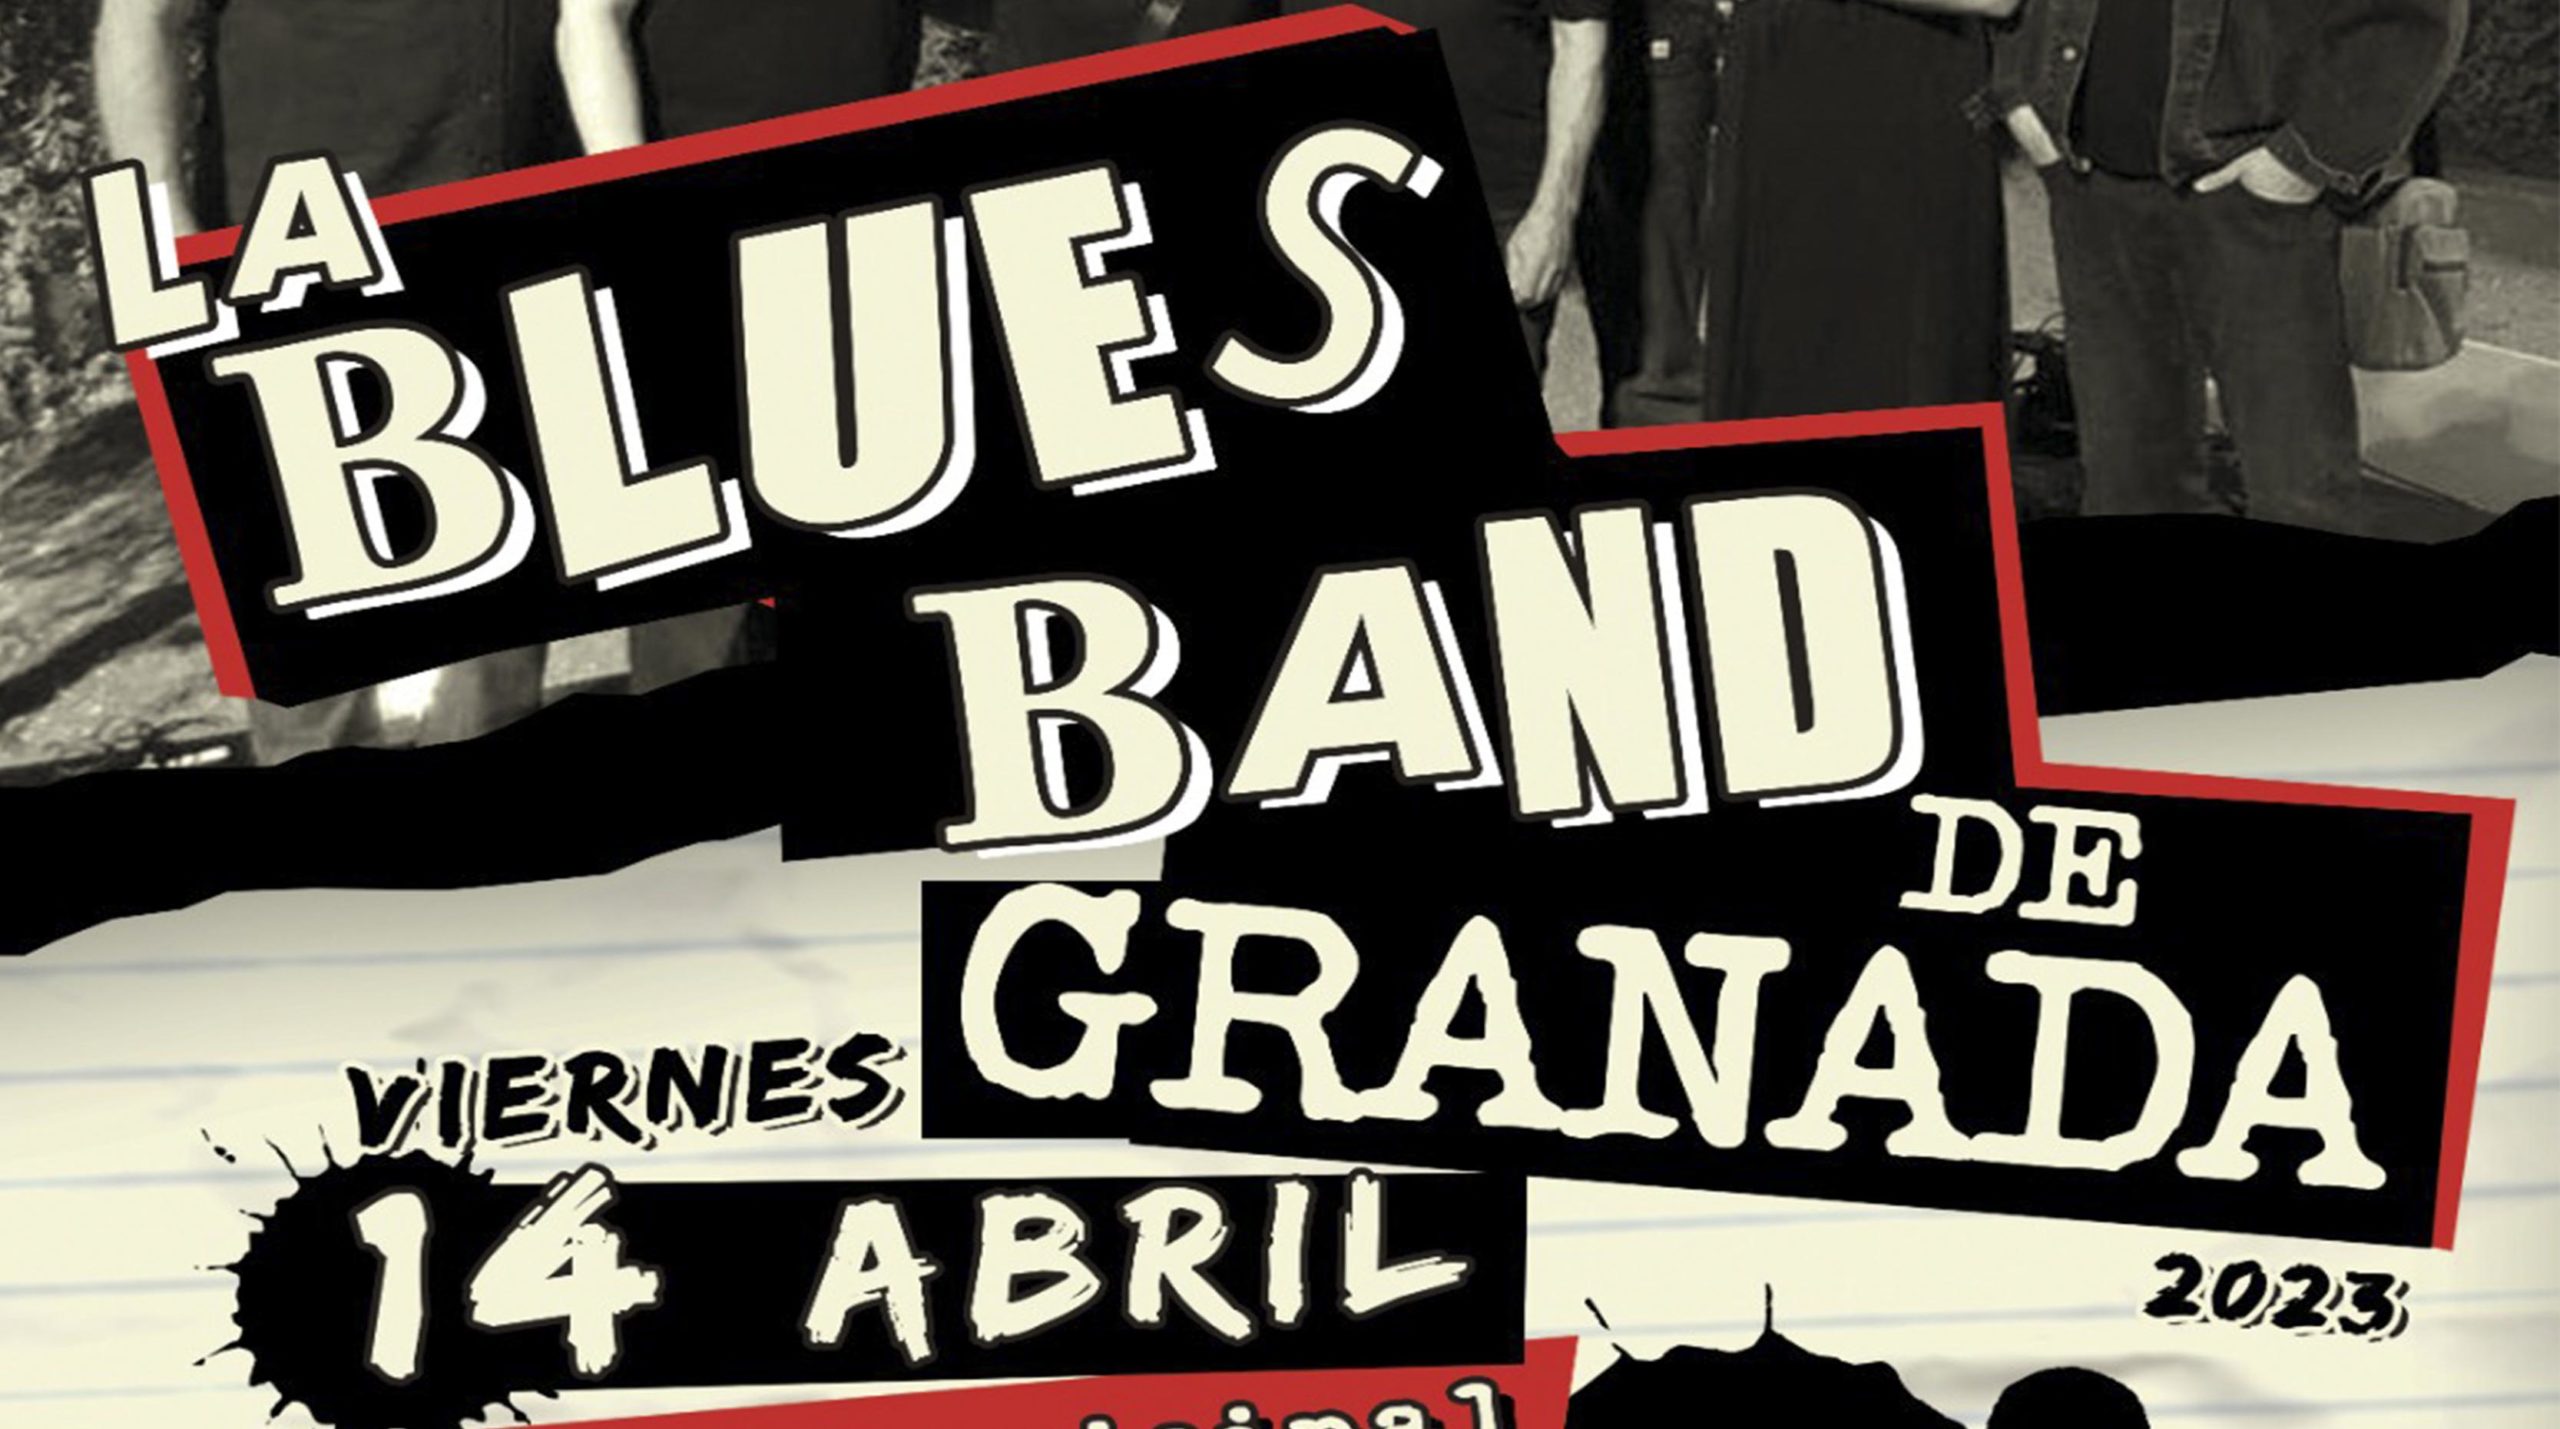 La Blues Band